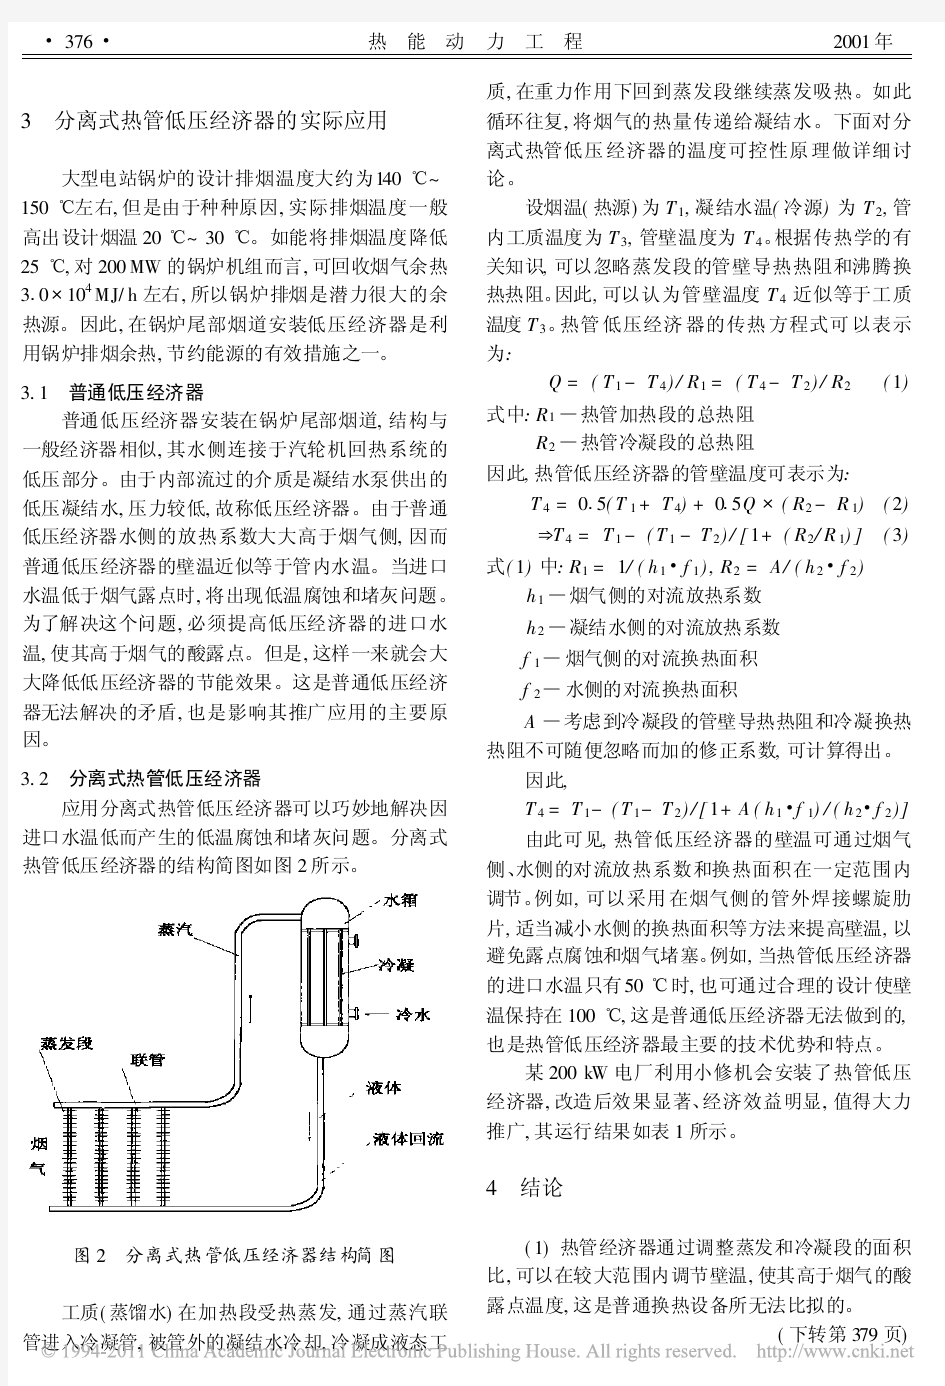 分离式热管换热器的工作原理及其在电厂余热回收中的应用